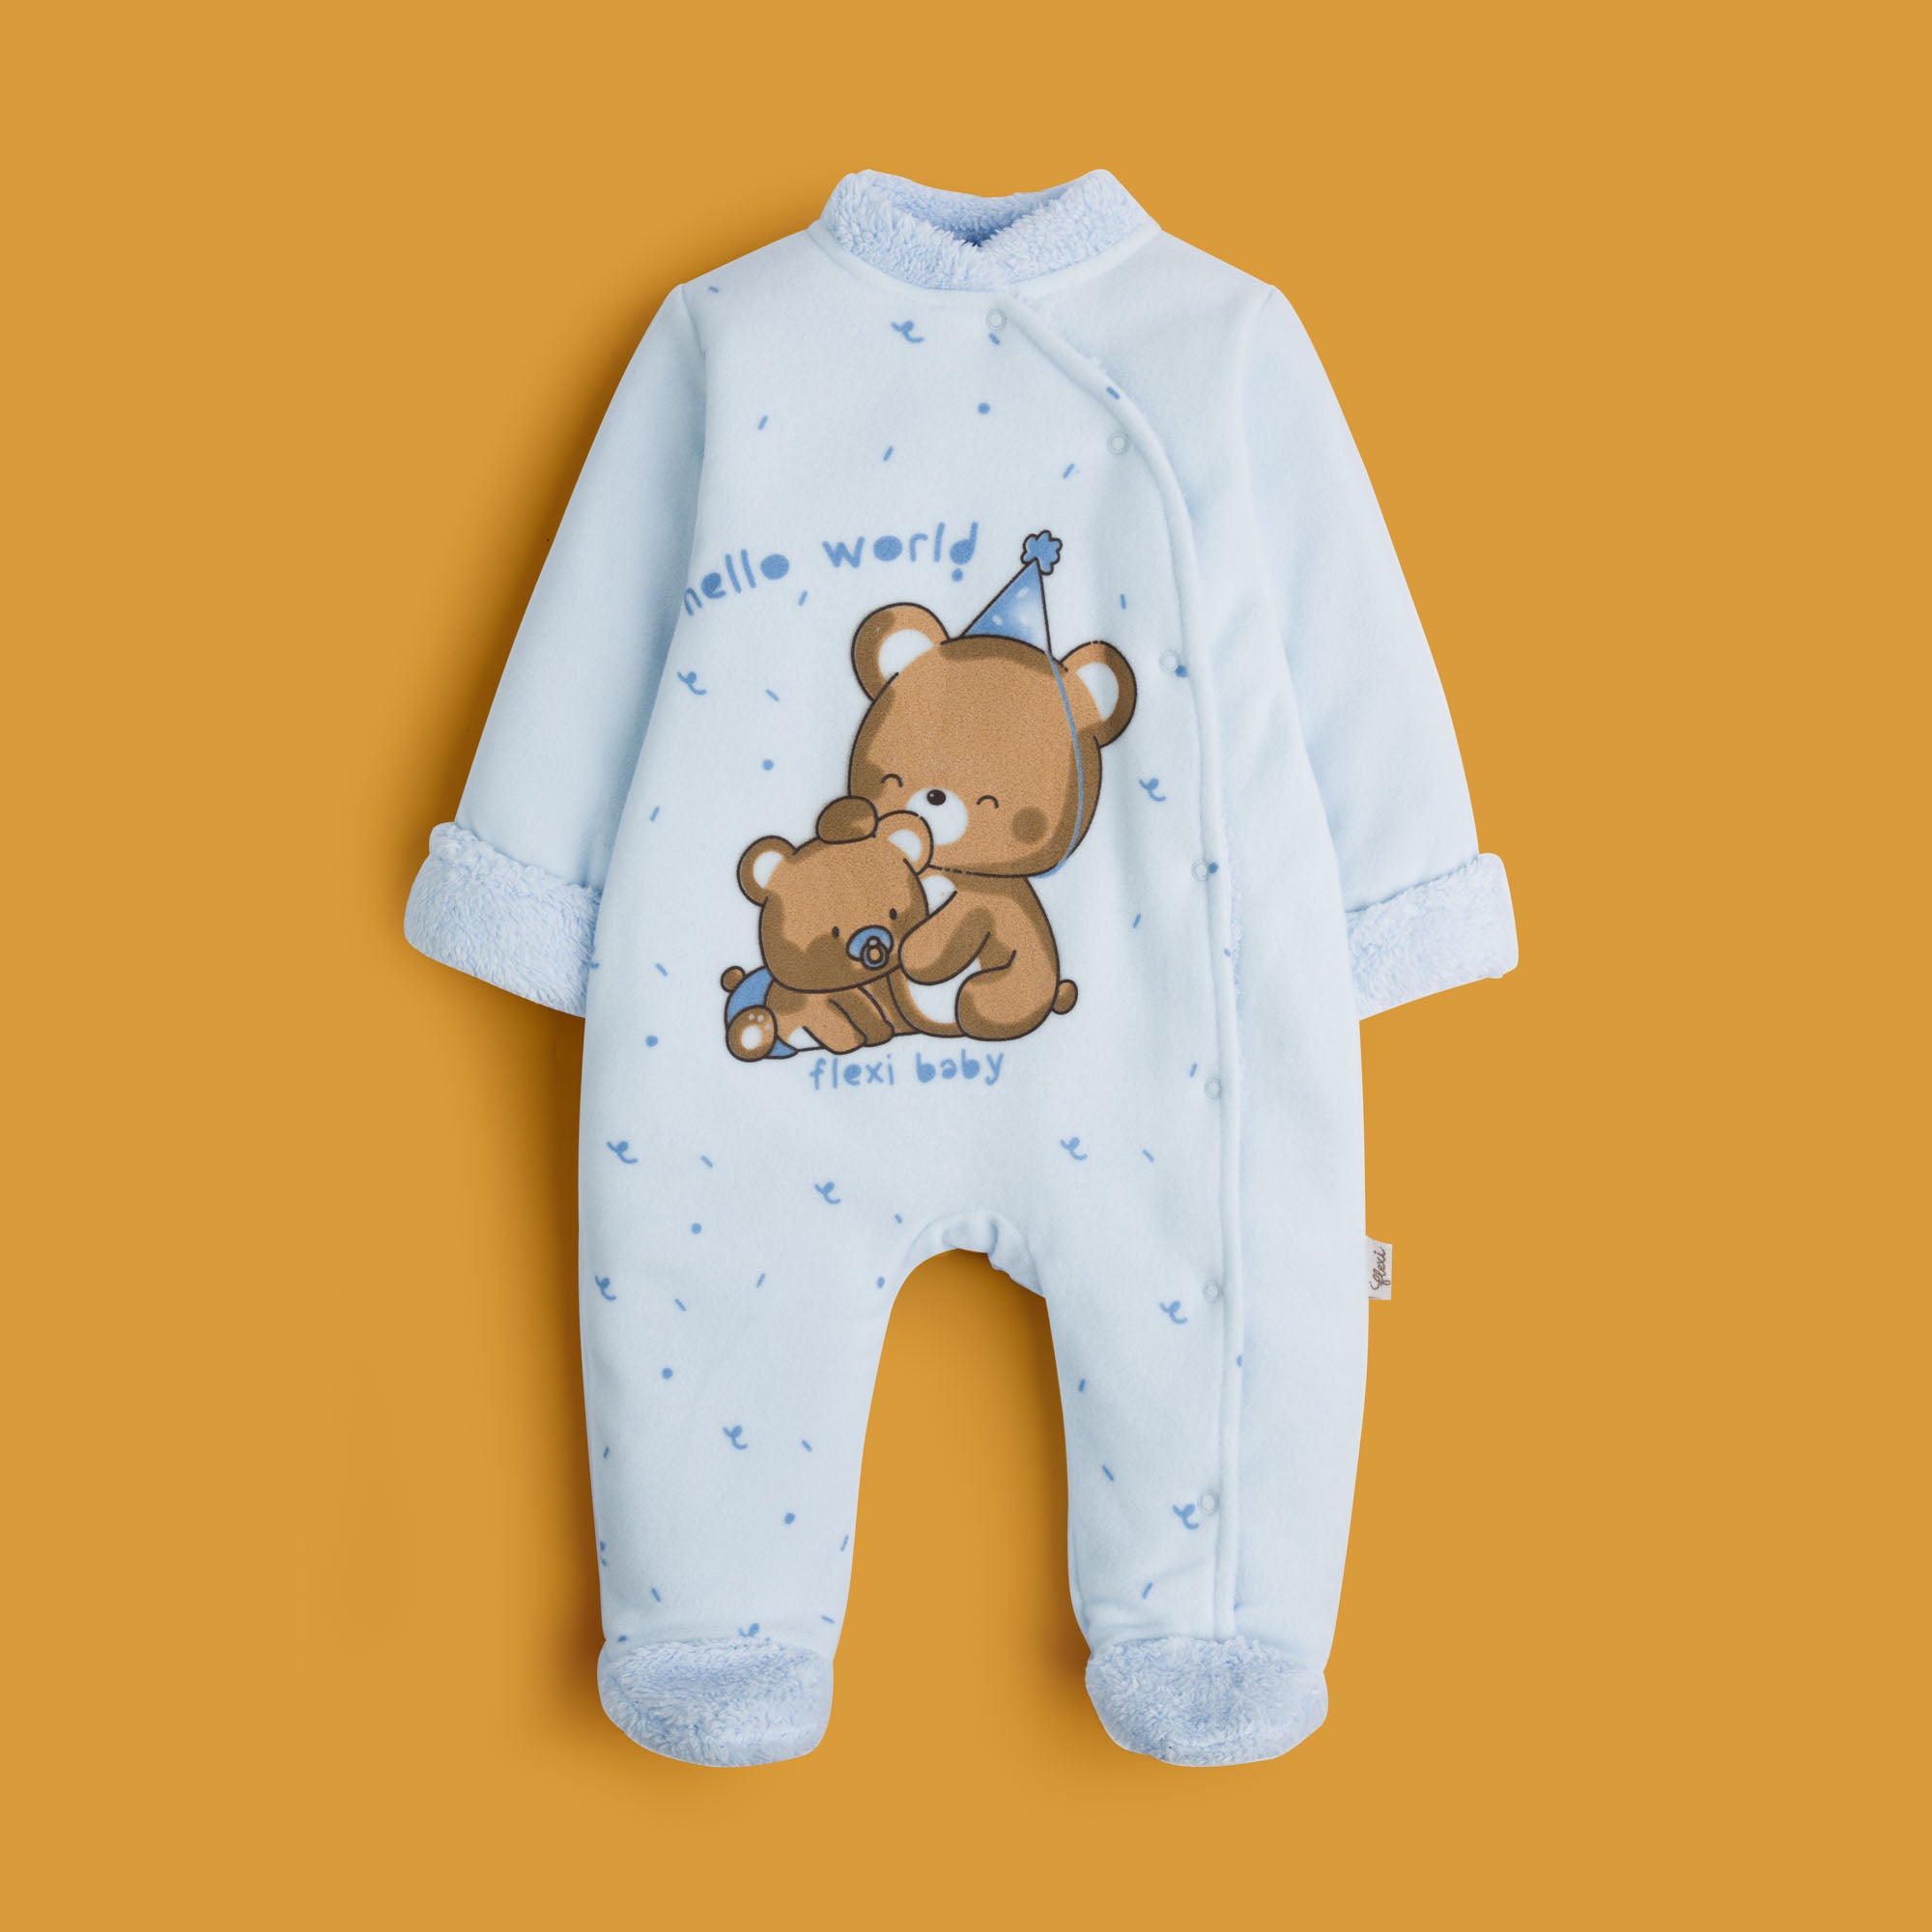 Flexi Blue Infant Bodysuit